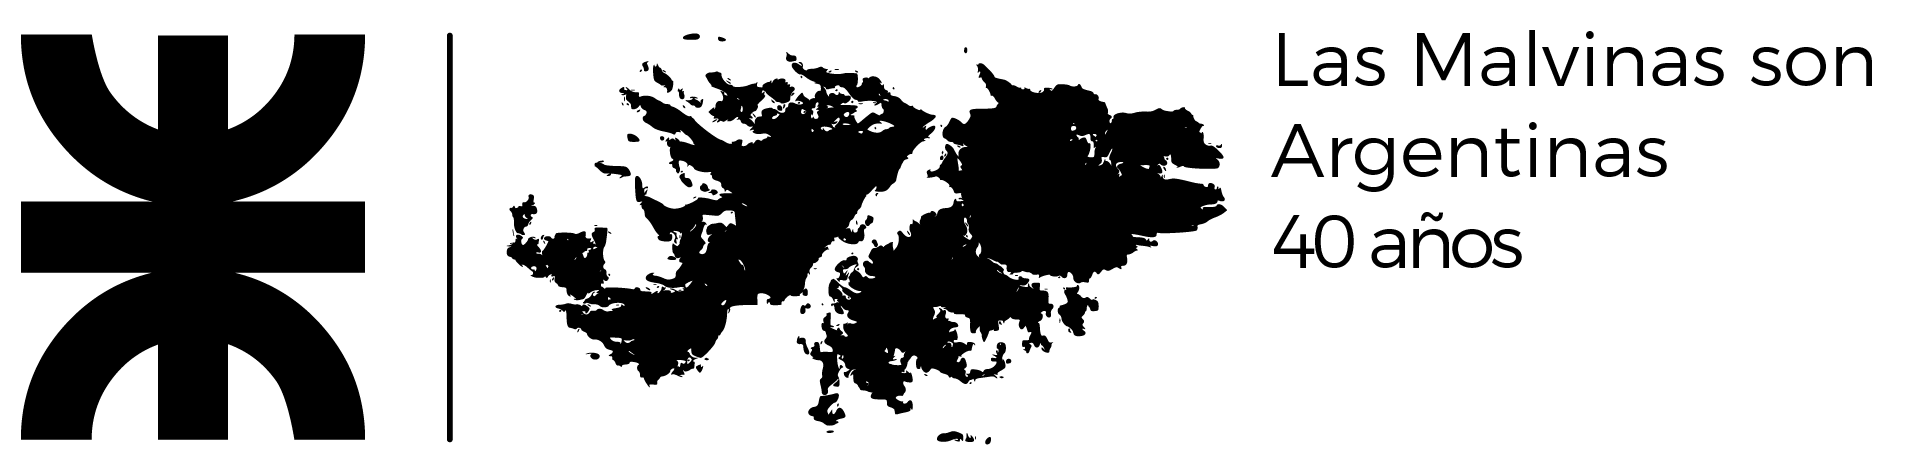 Logo UTN